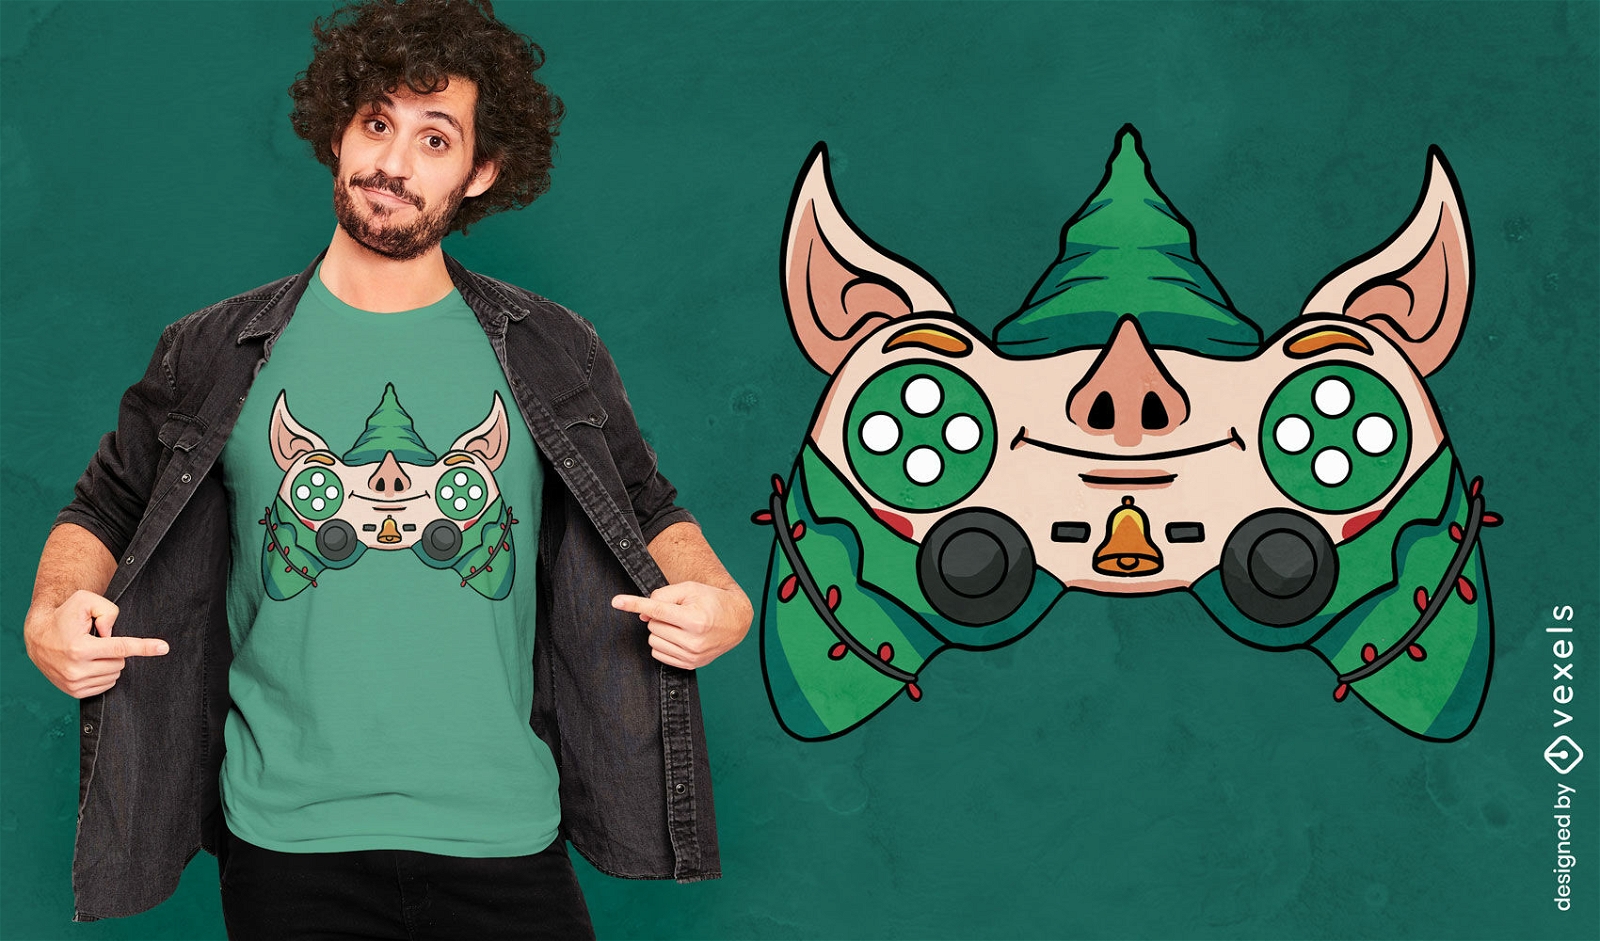 Dise?o de camiseta navide?a de controlador de videojuego elfo.